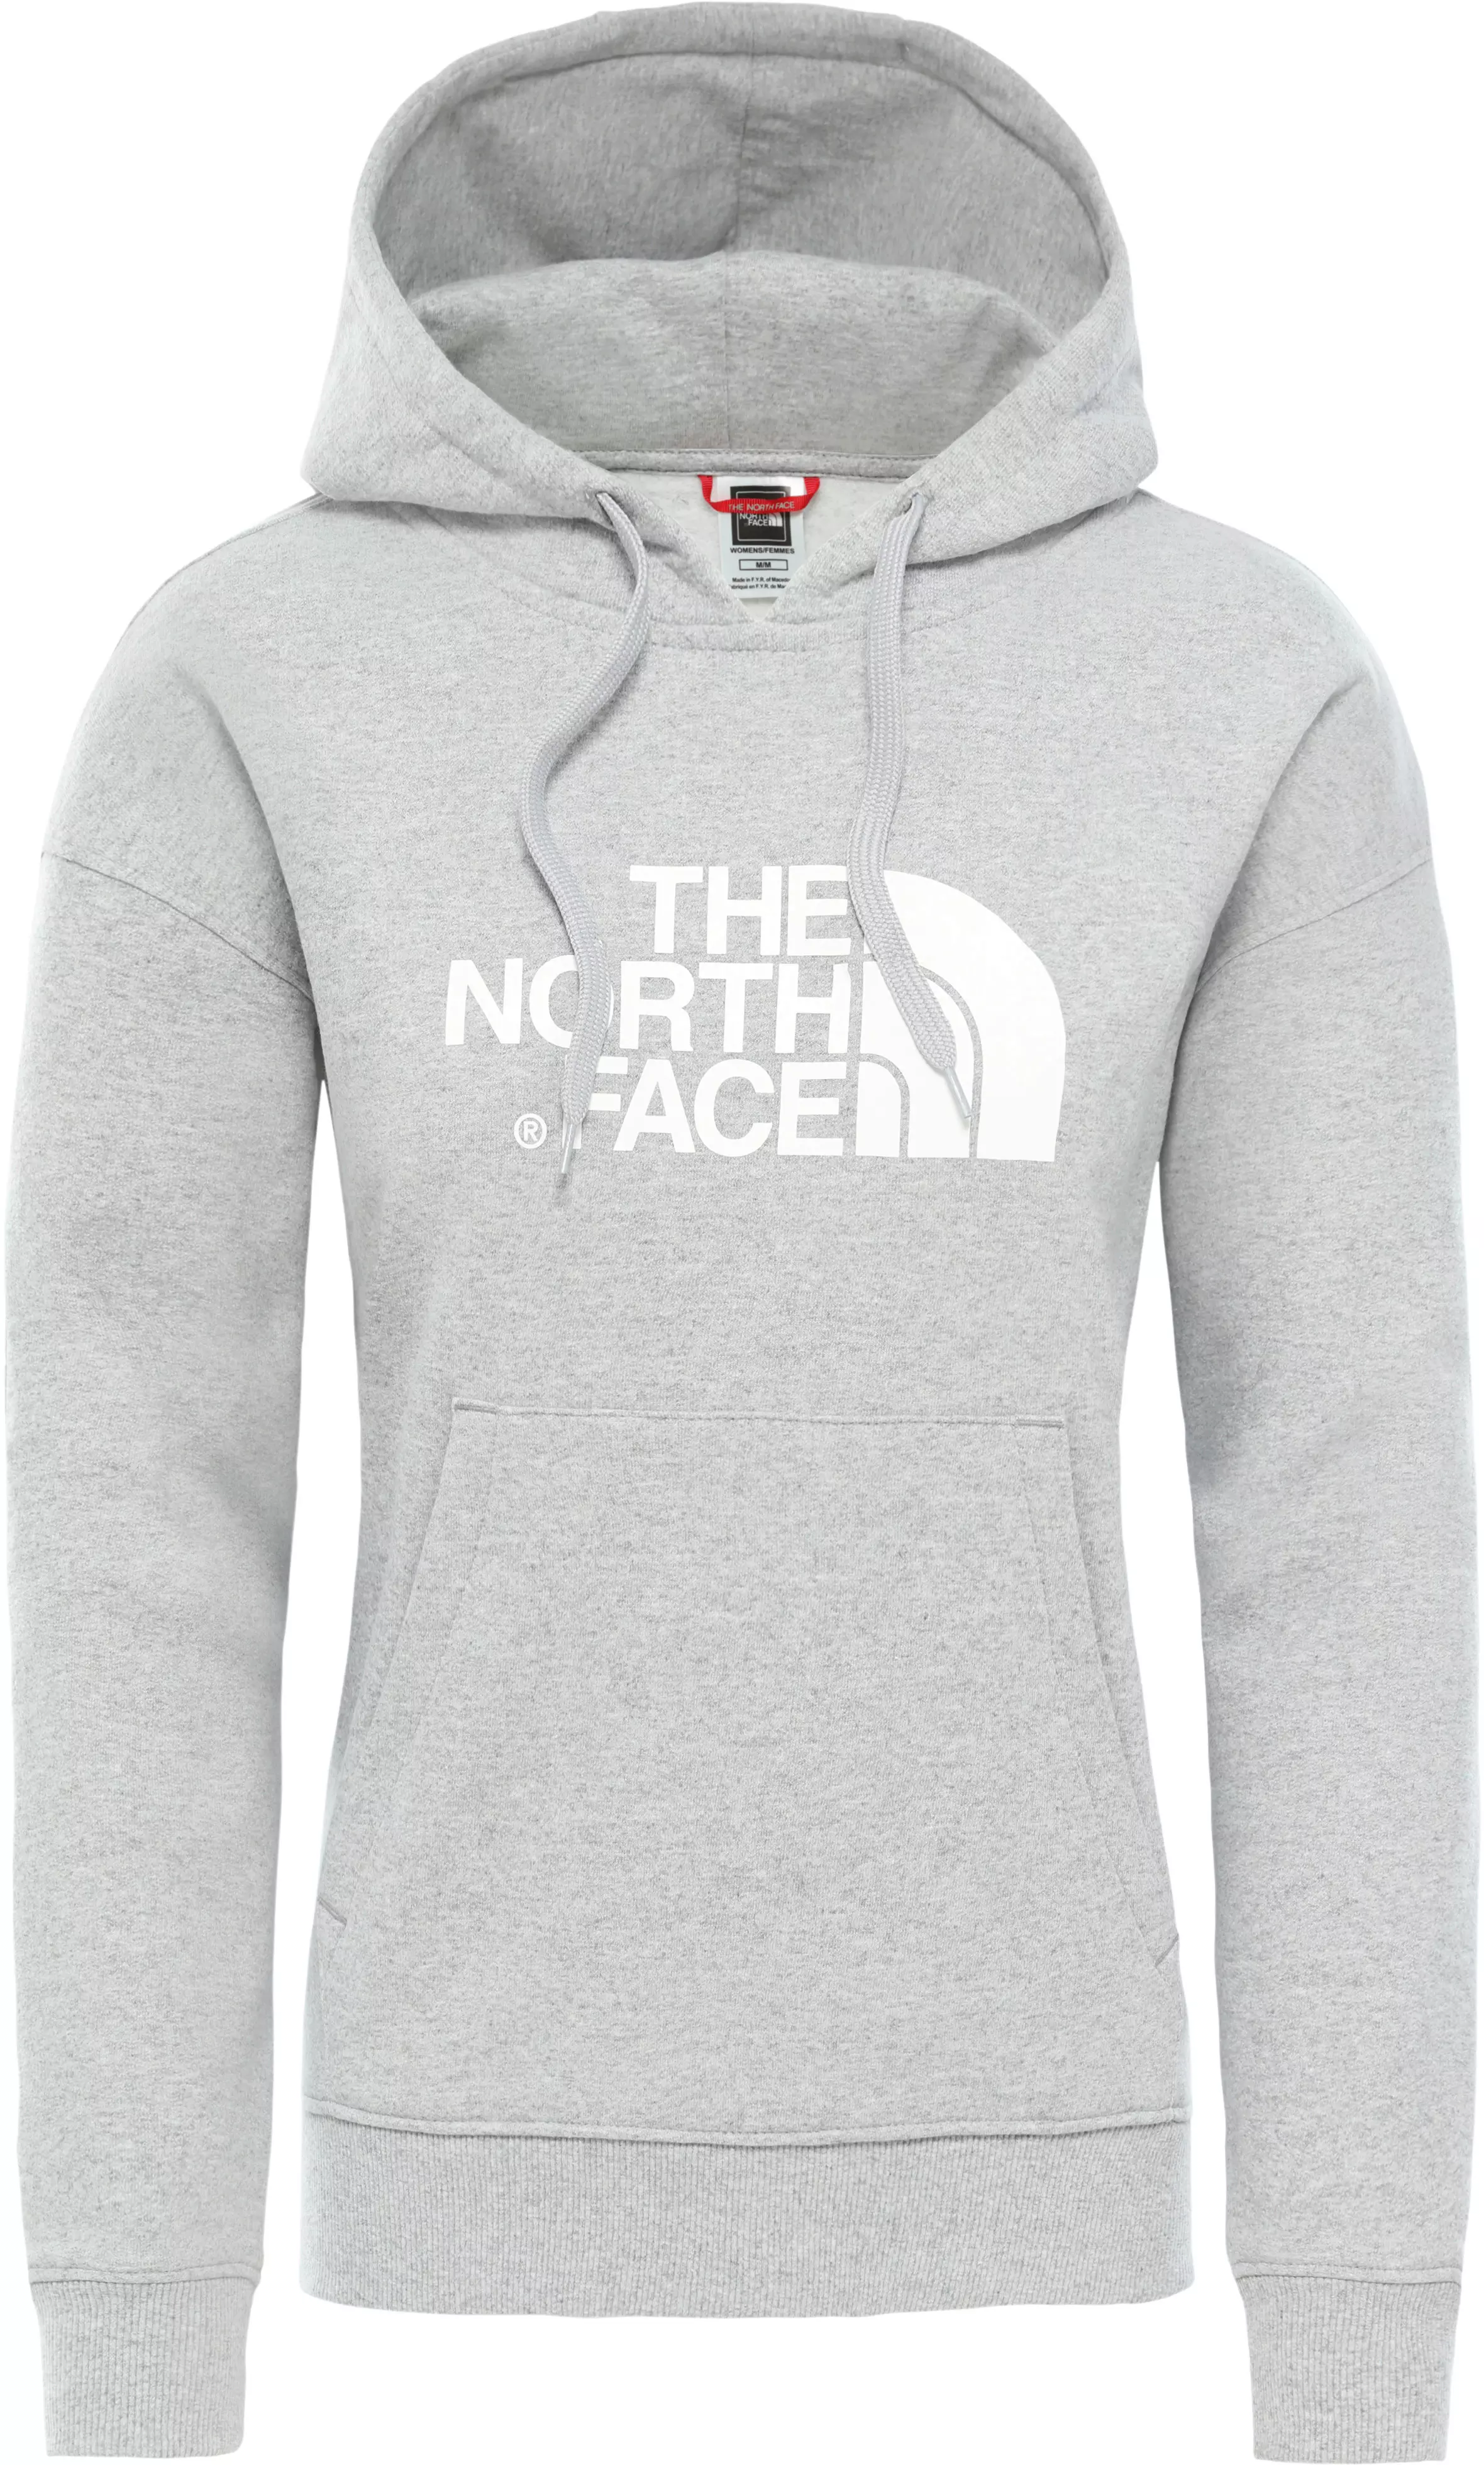 The North Face Drew Peak Hoodie Damen Tnf Light Grey Heather Tnf White Im Online Shop Von Sportscheck Kaufen